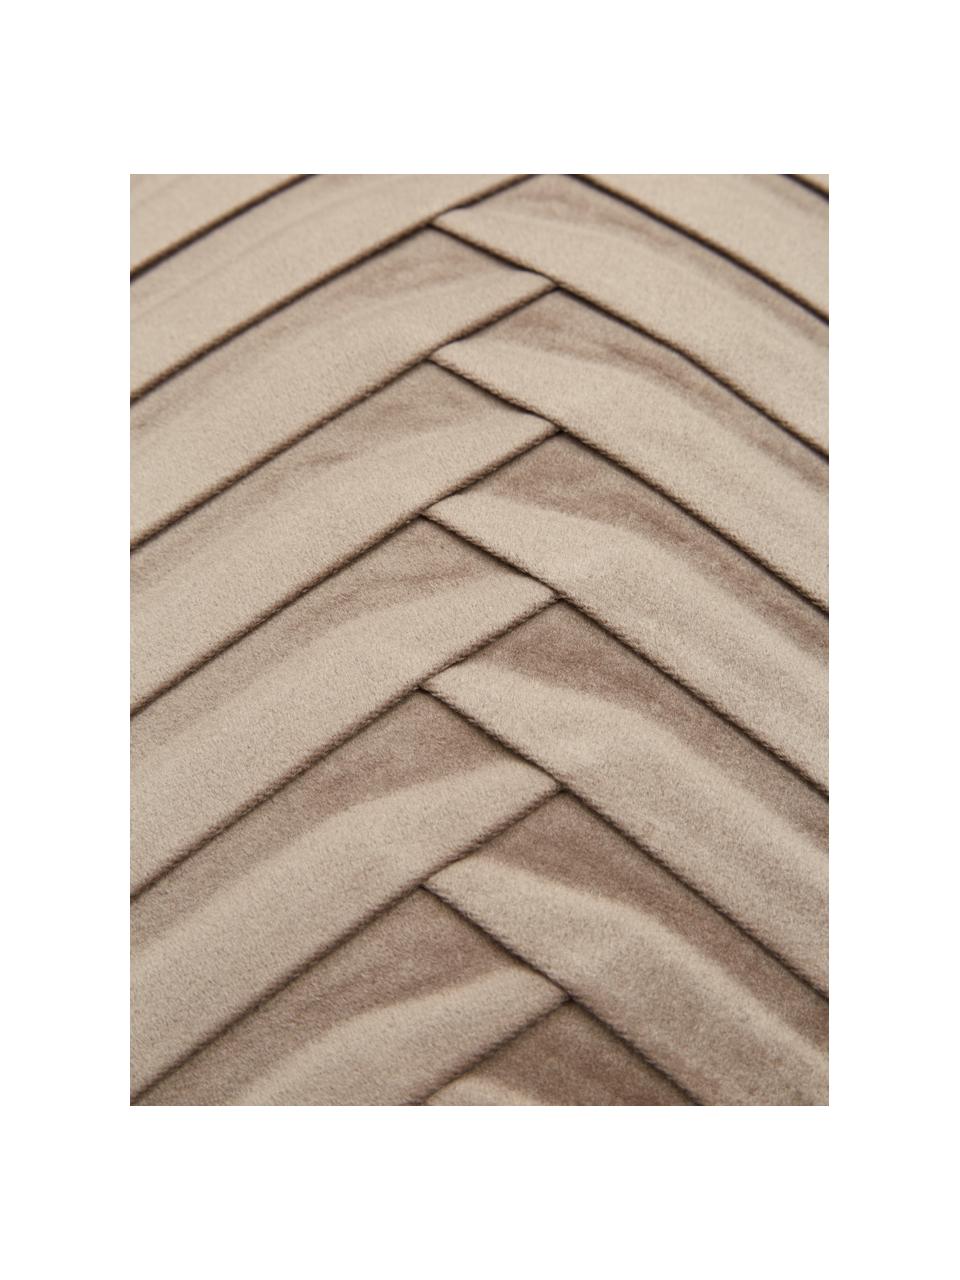 Samt-Kissenhülle Lucie in Taupe mit Struktur-Oberfläche, 100% Samt (Polyester), Beige, B 30 x L 50 cm